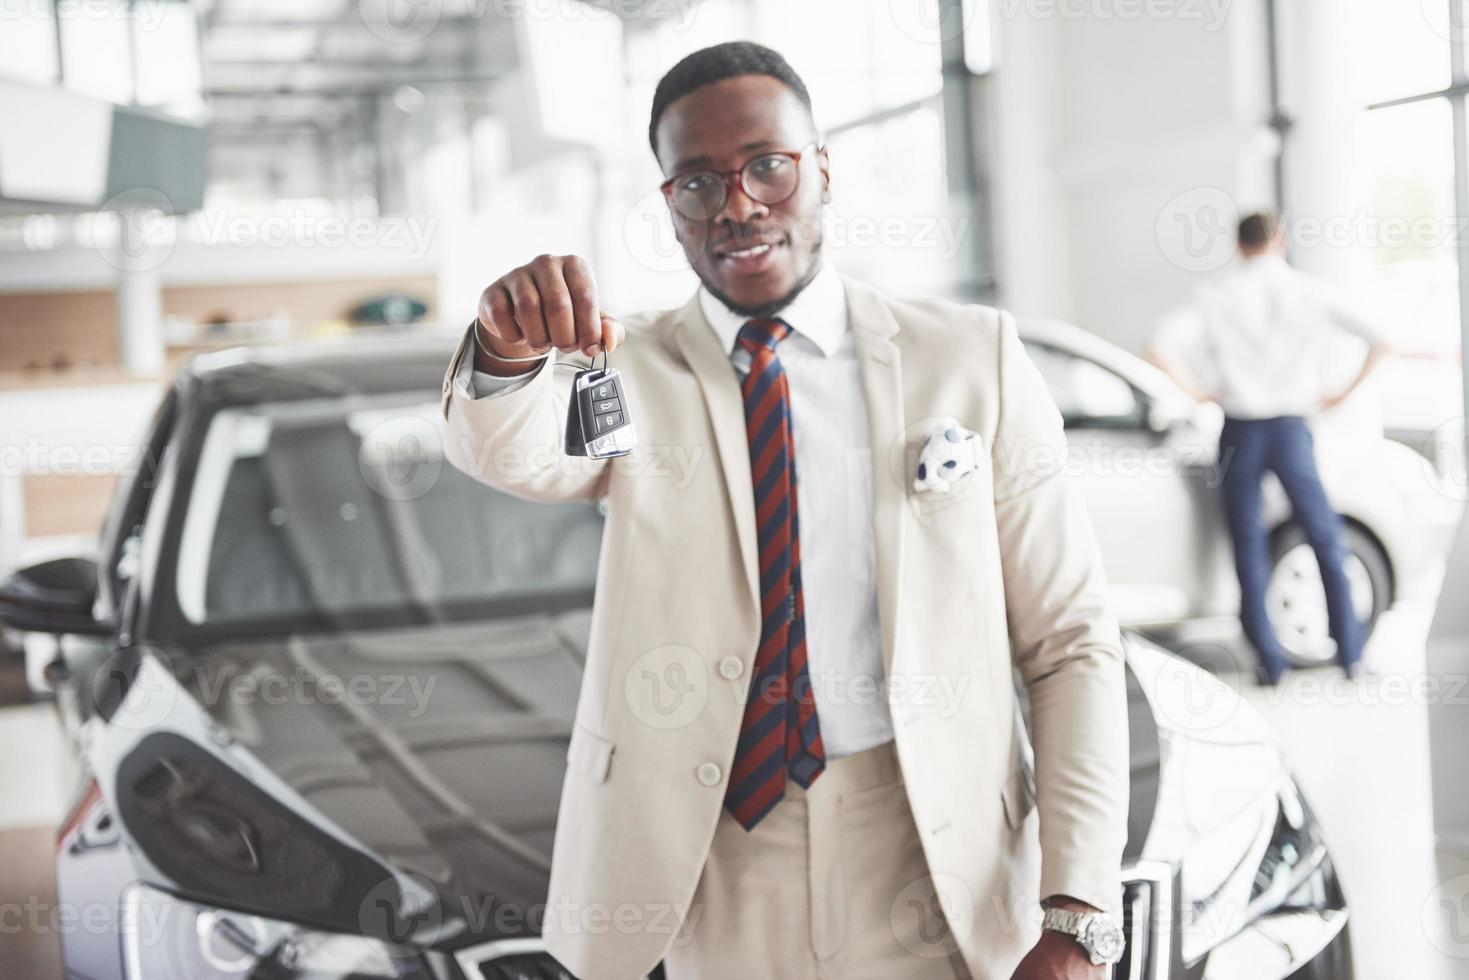 el joven atractivo empresario negro compra un coche nuevo, los sueños se hacen realidad foto